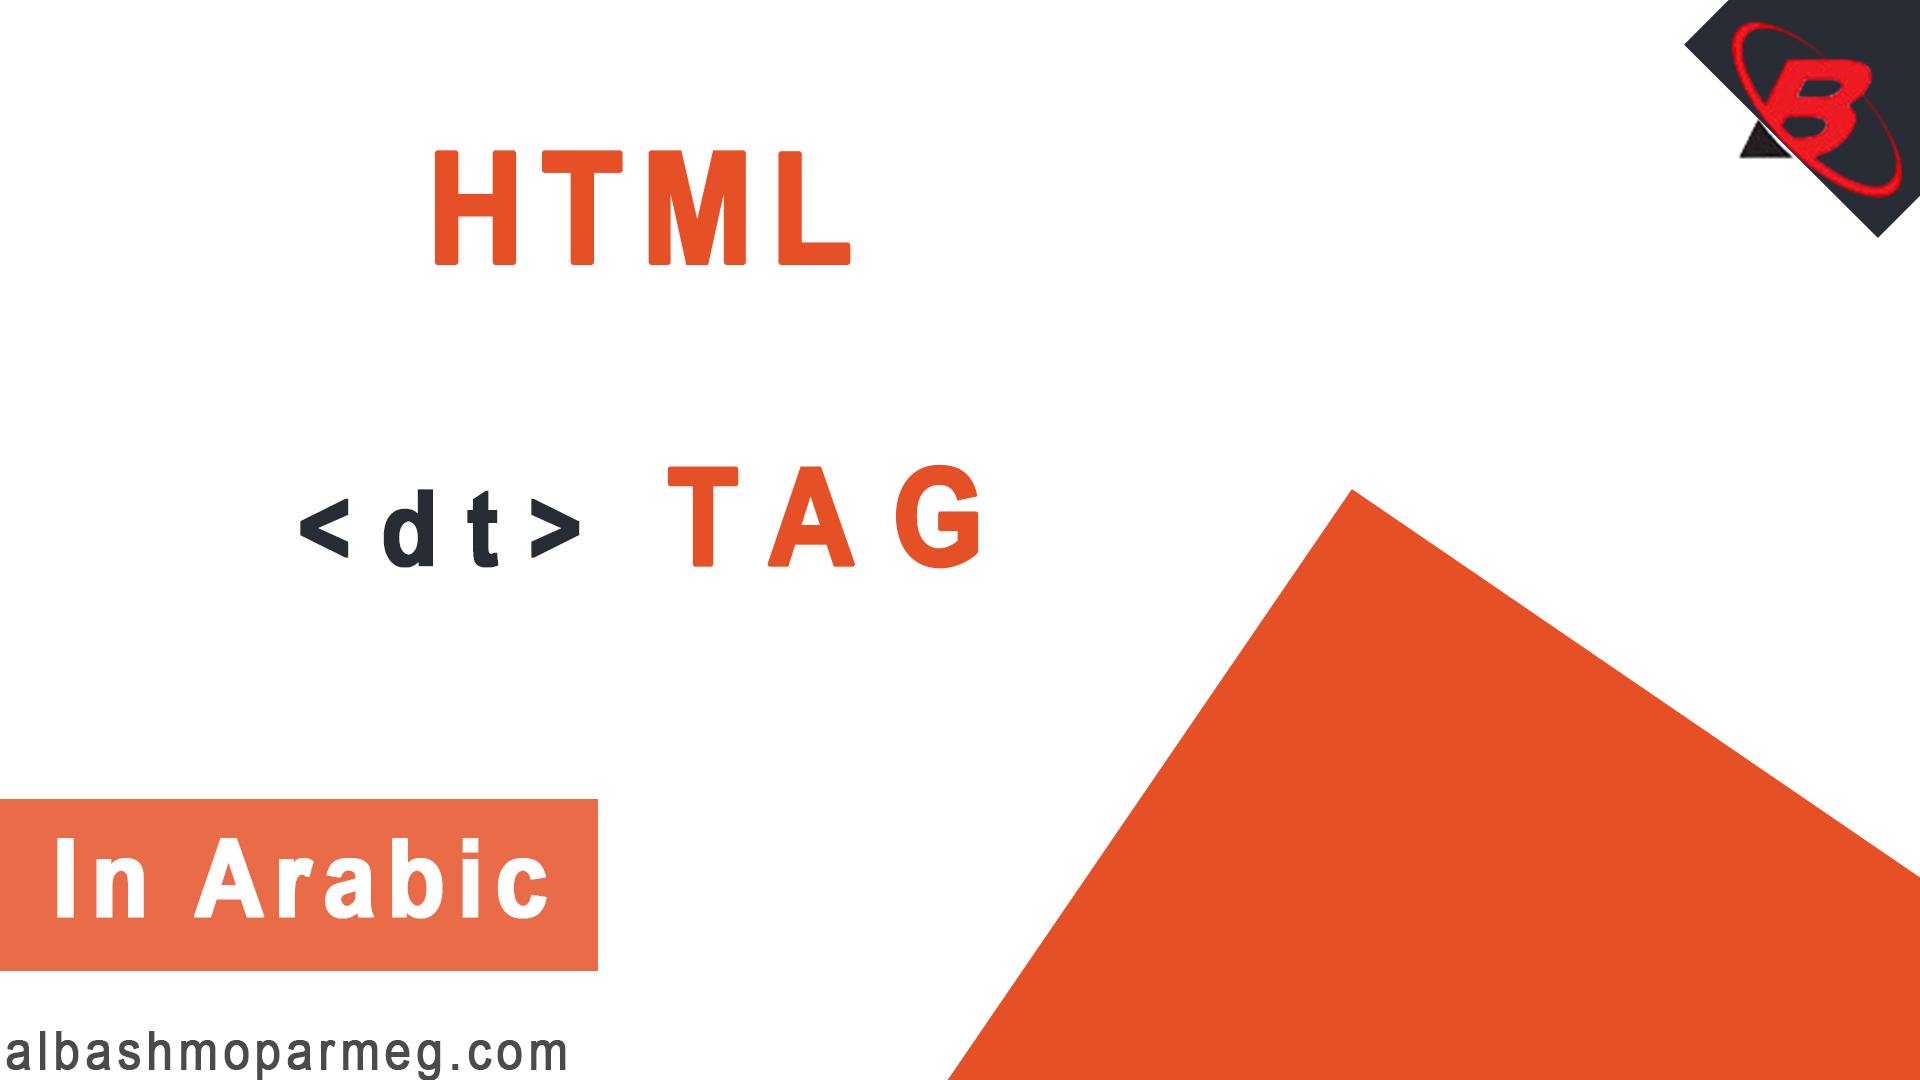 HTML dt tag - الباشمبرمج